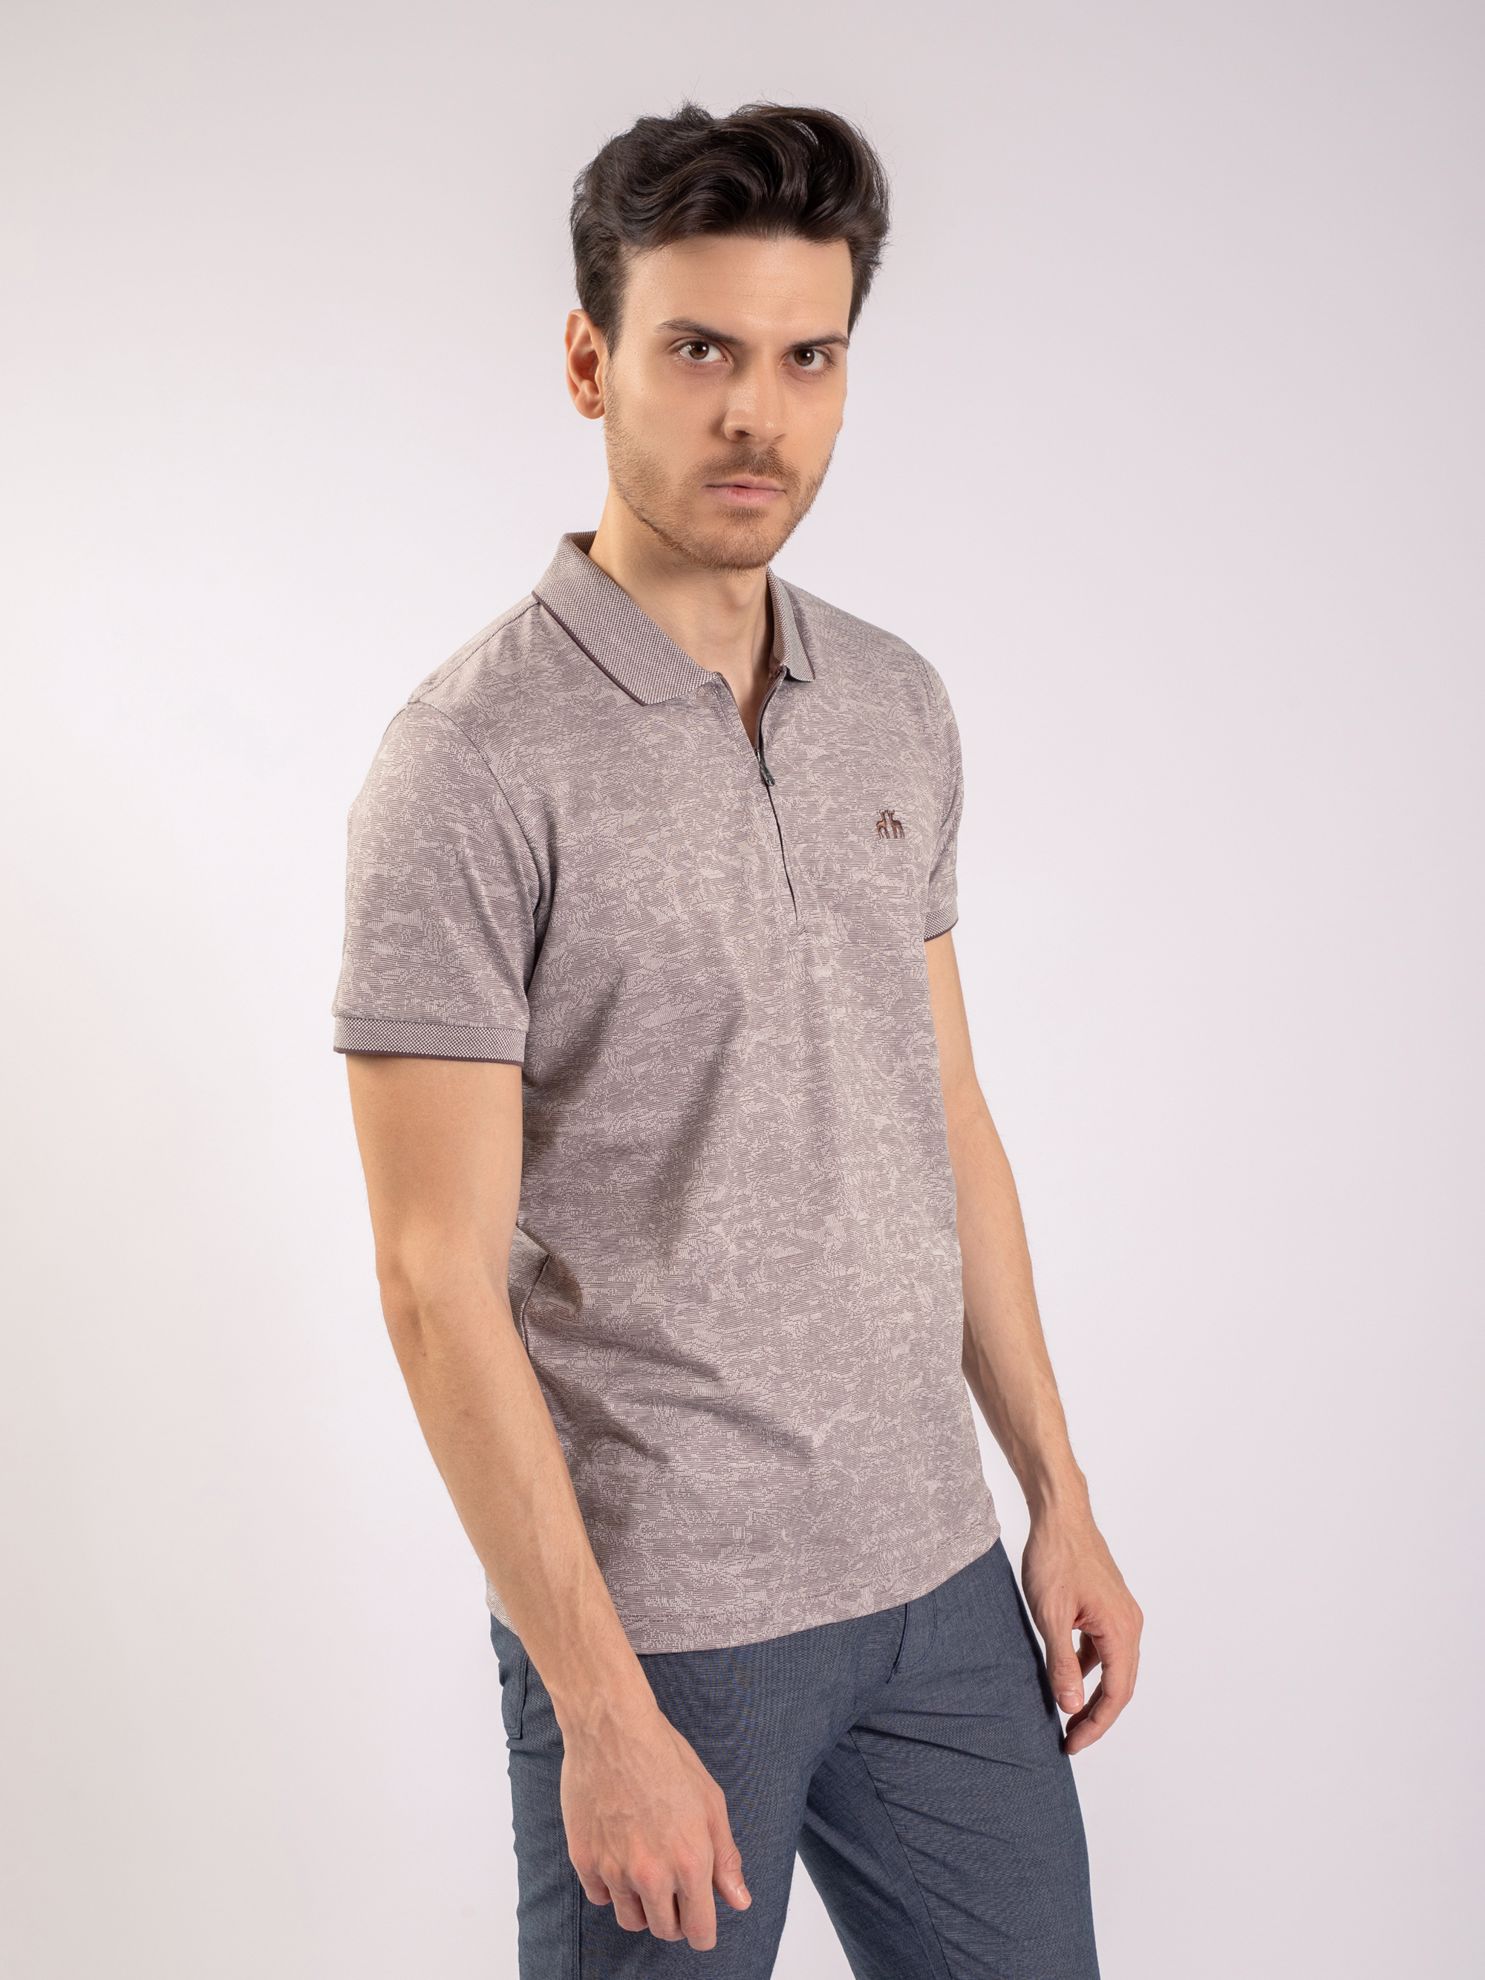 Karaca Erkek Slim Fit Polo Yaka Tişört-Gül Kurusu. ürün görseli